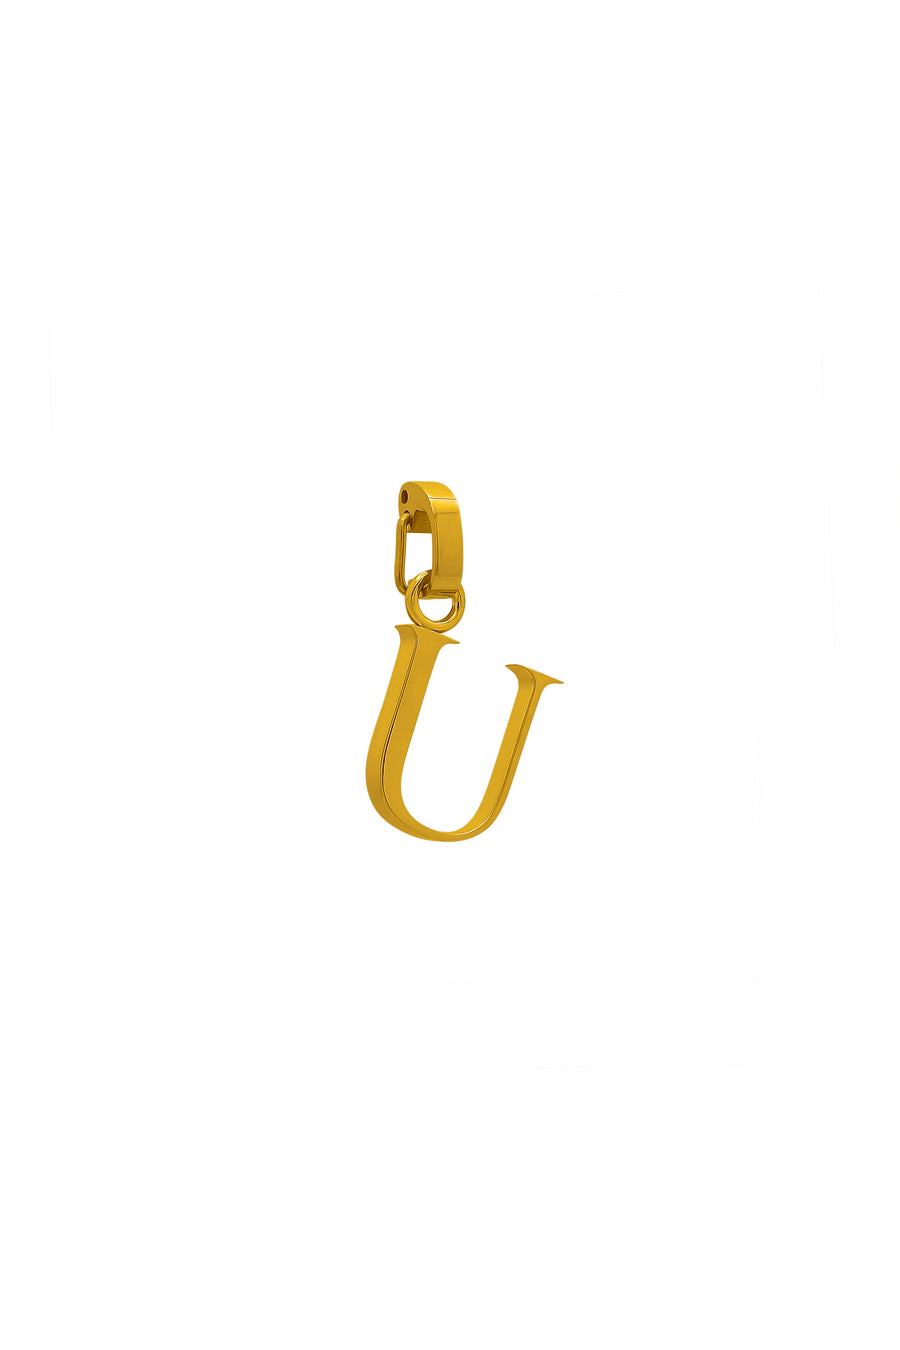 "U" Carisma Letter Pendant